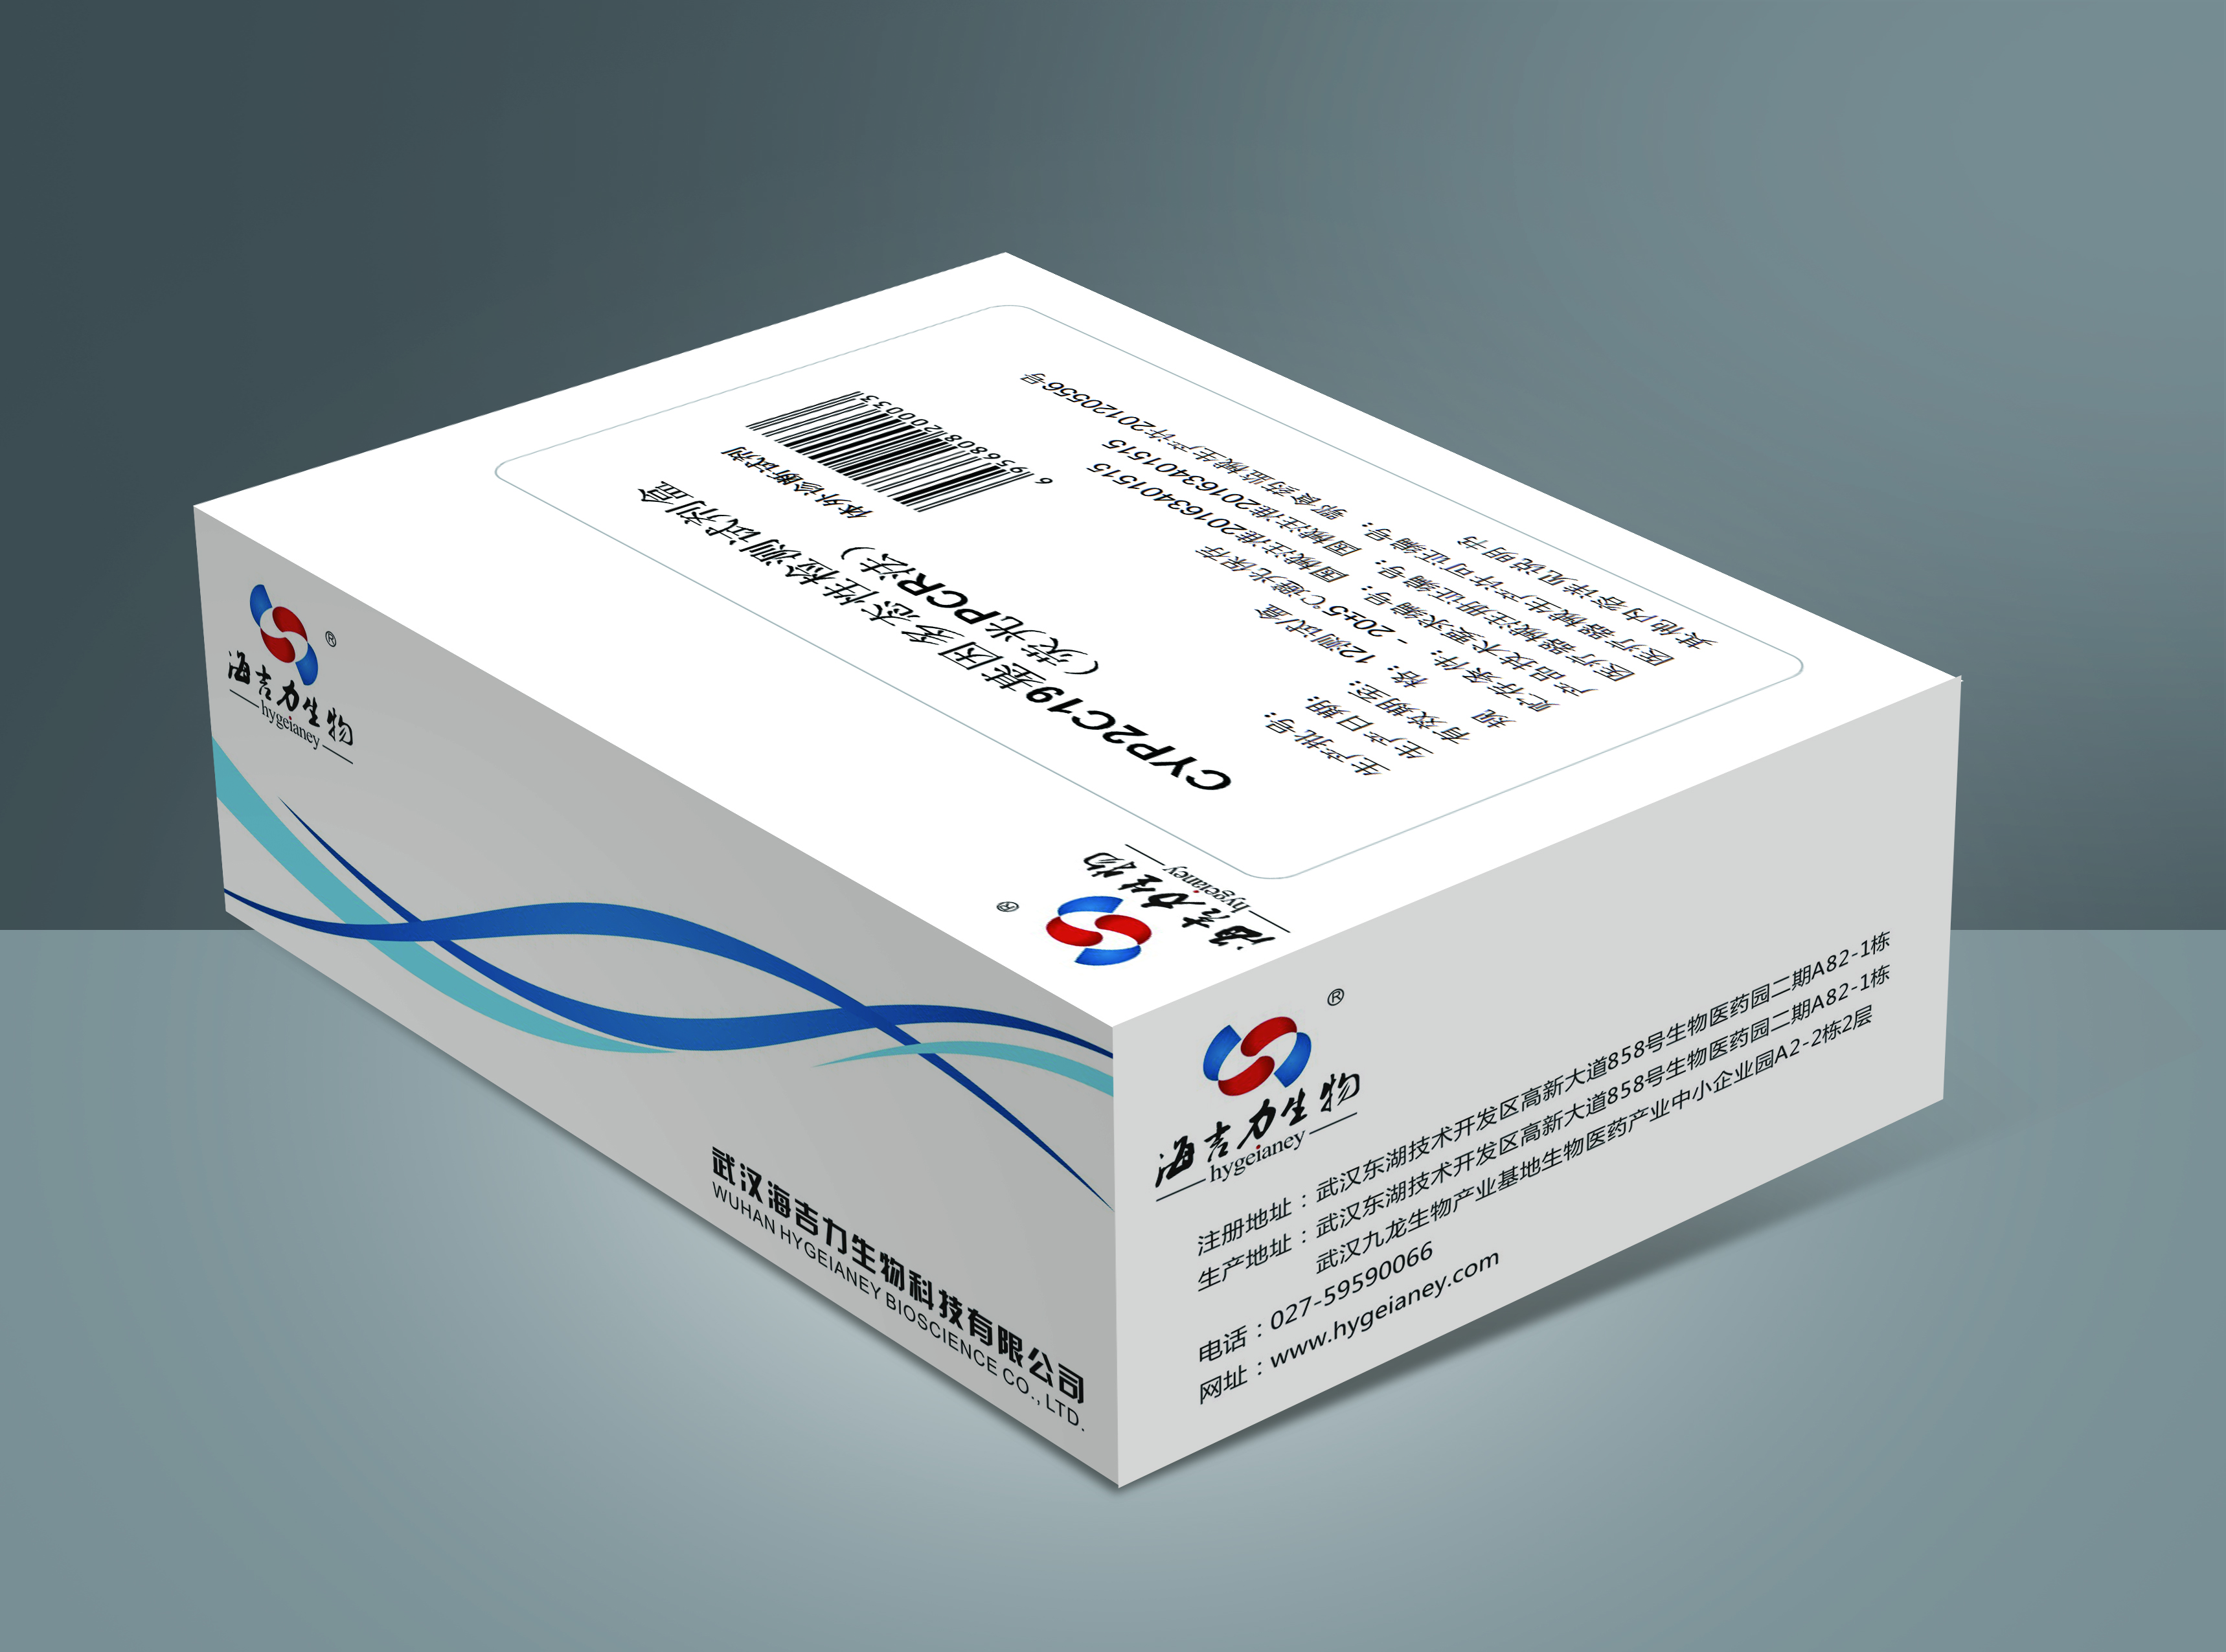 【海吉力】CYP2C19基因多态性检测试剂盒(荧光PCR法)-云医购